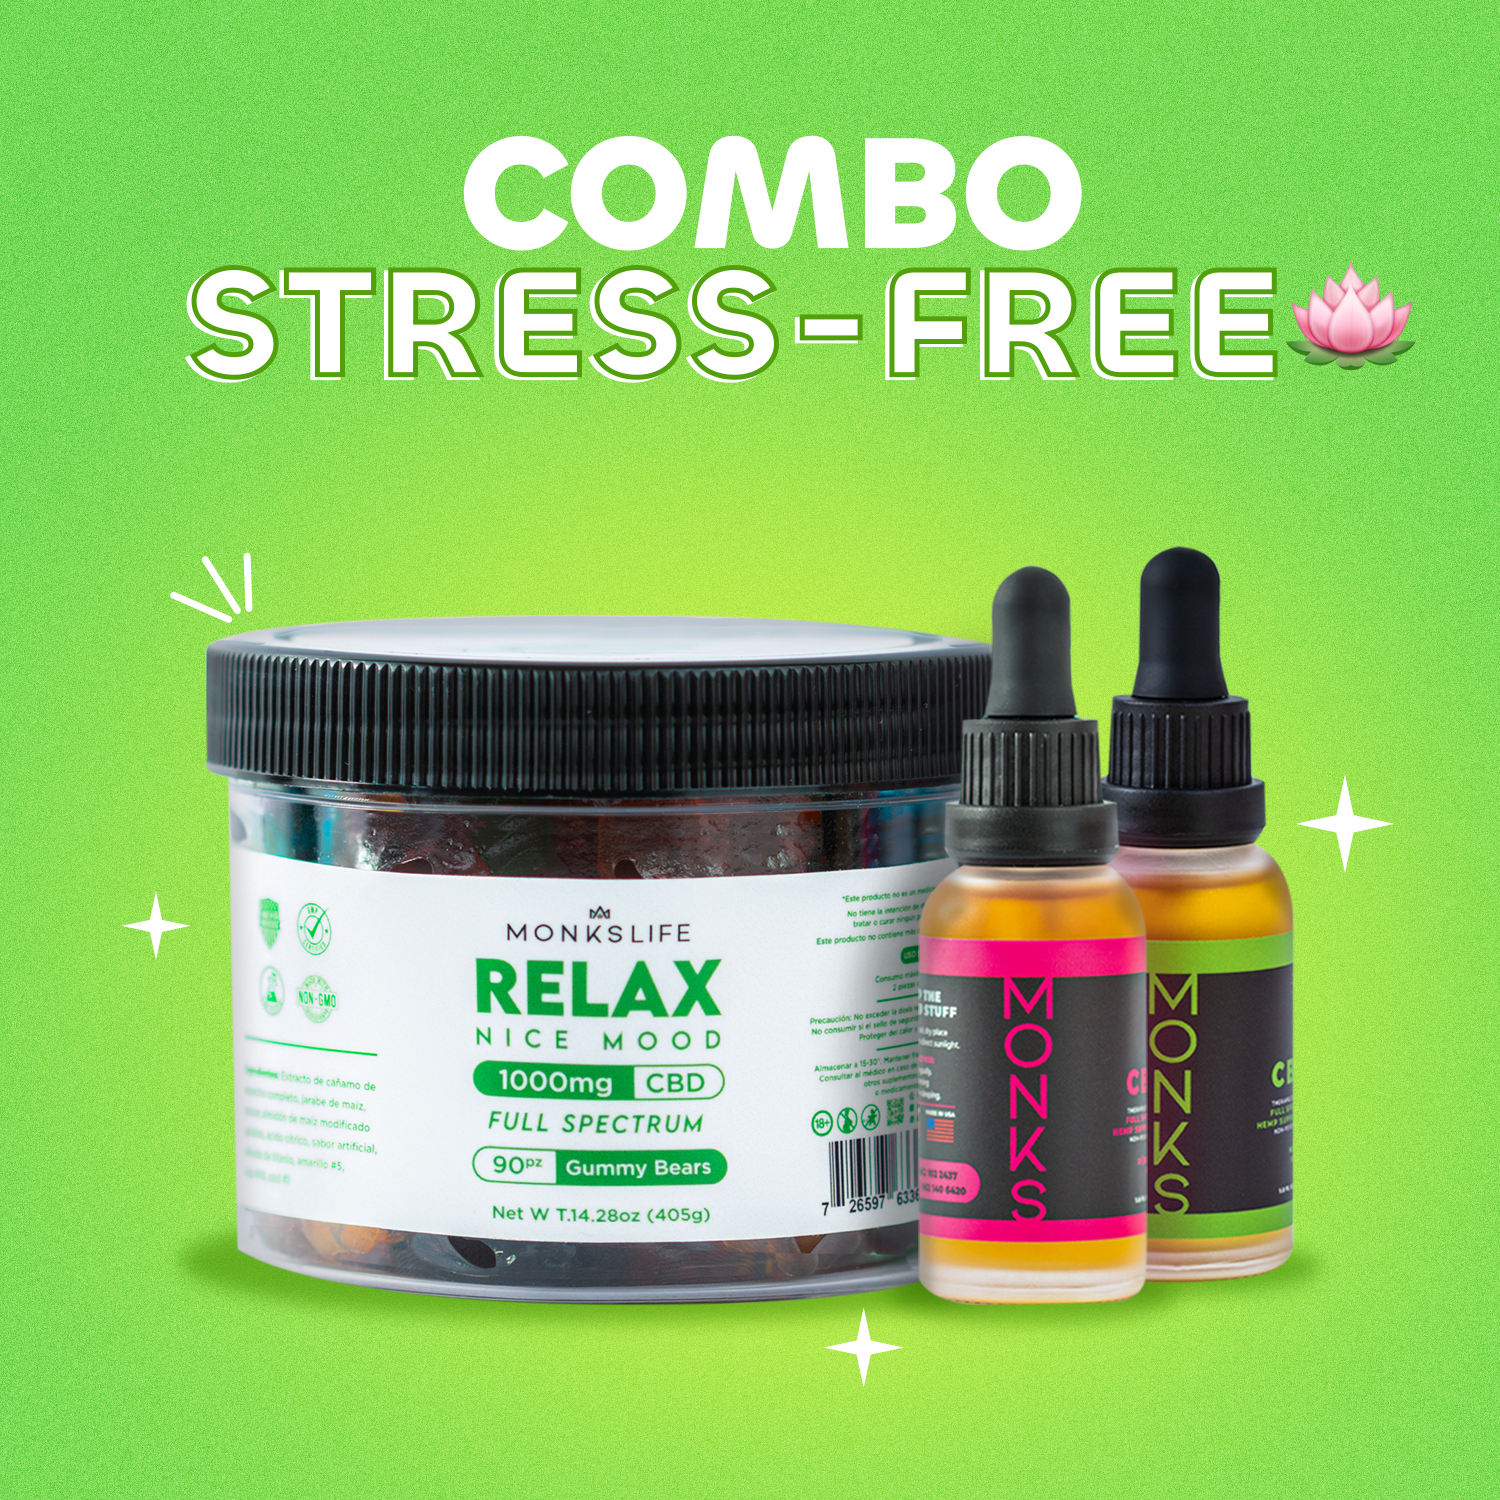 COMBO STRESS-FREE